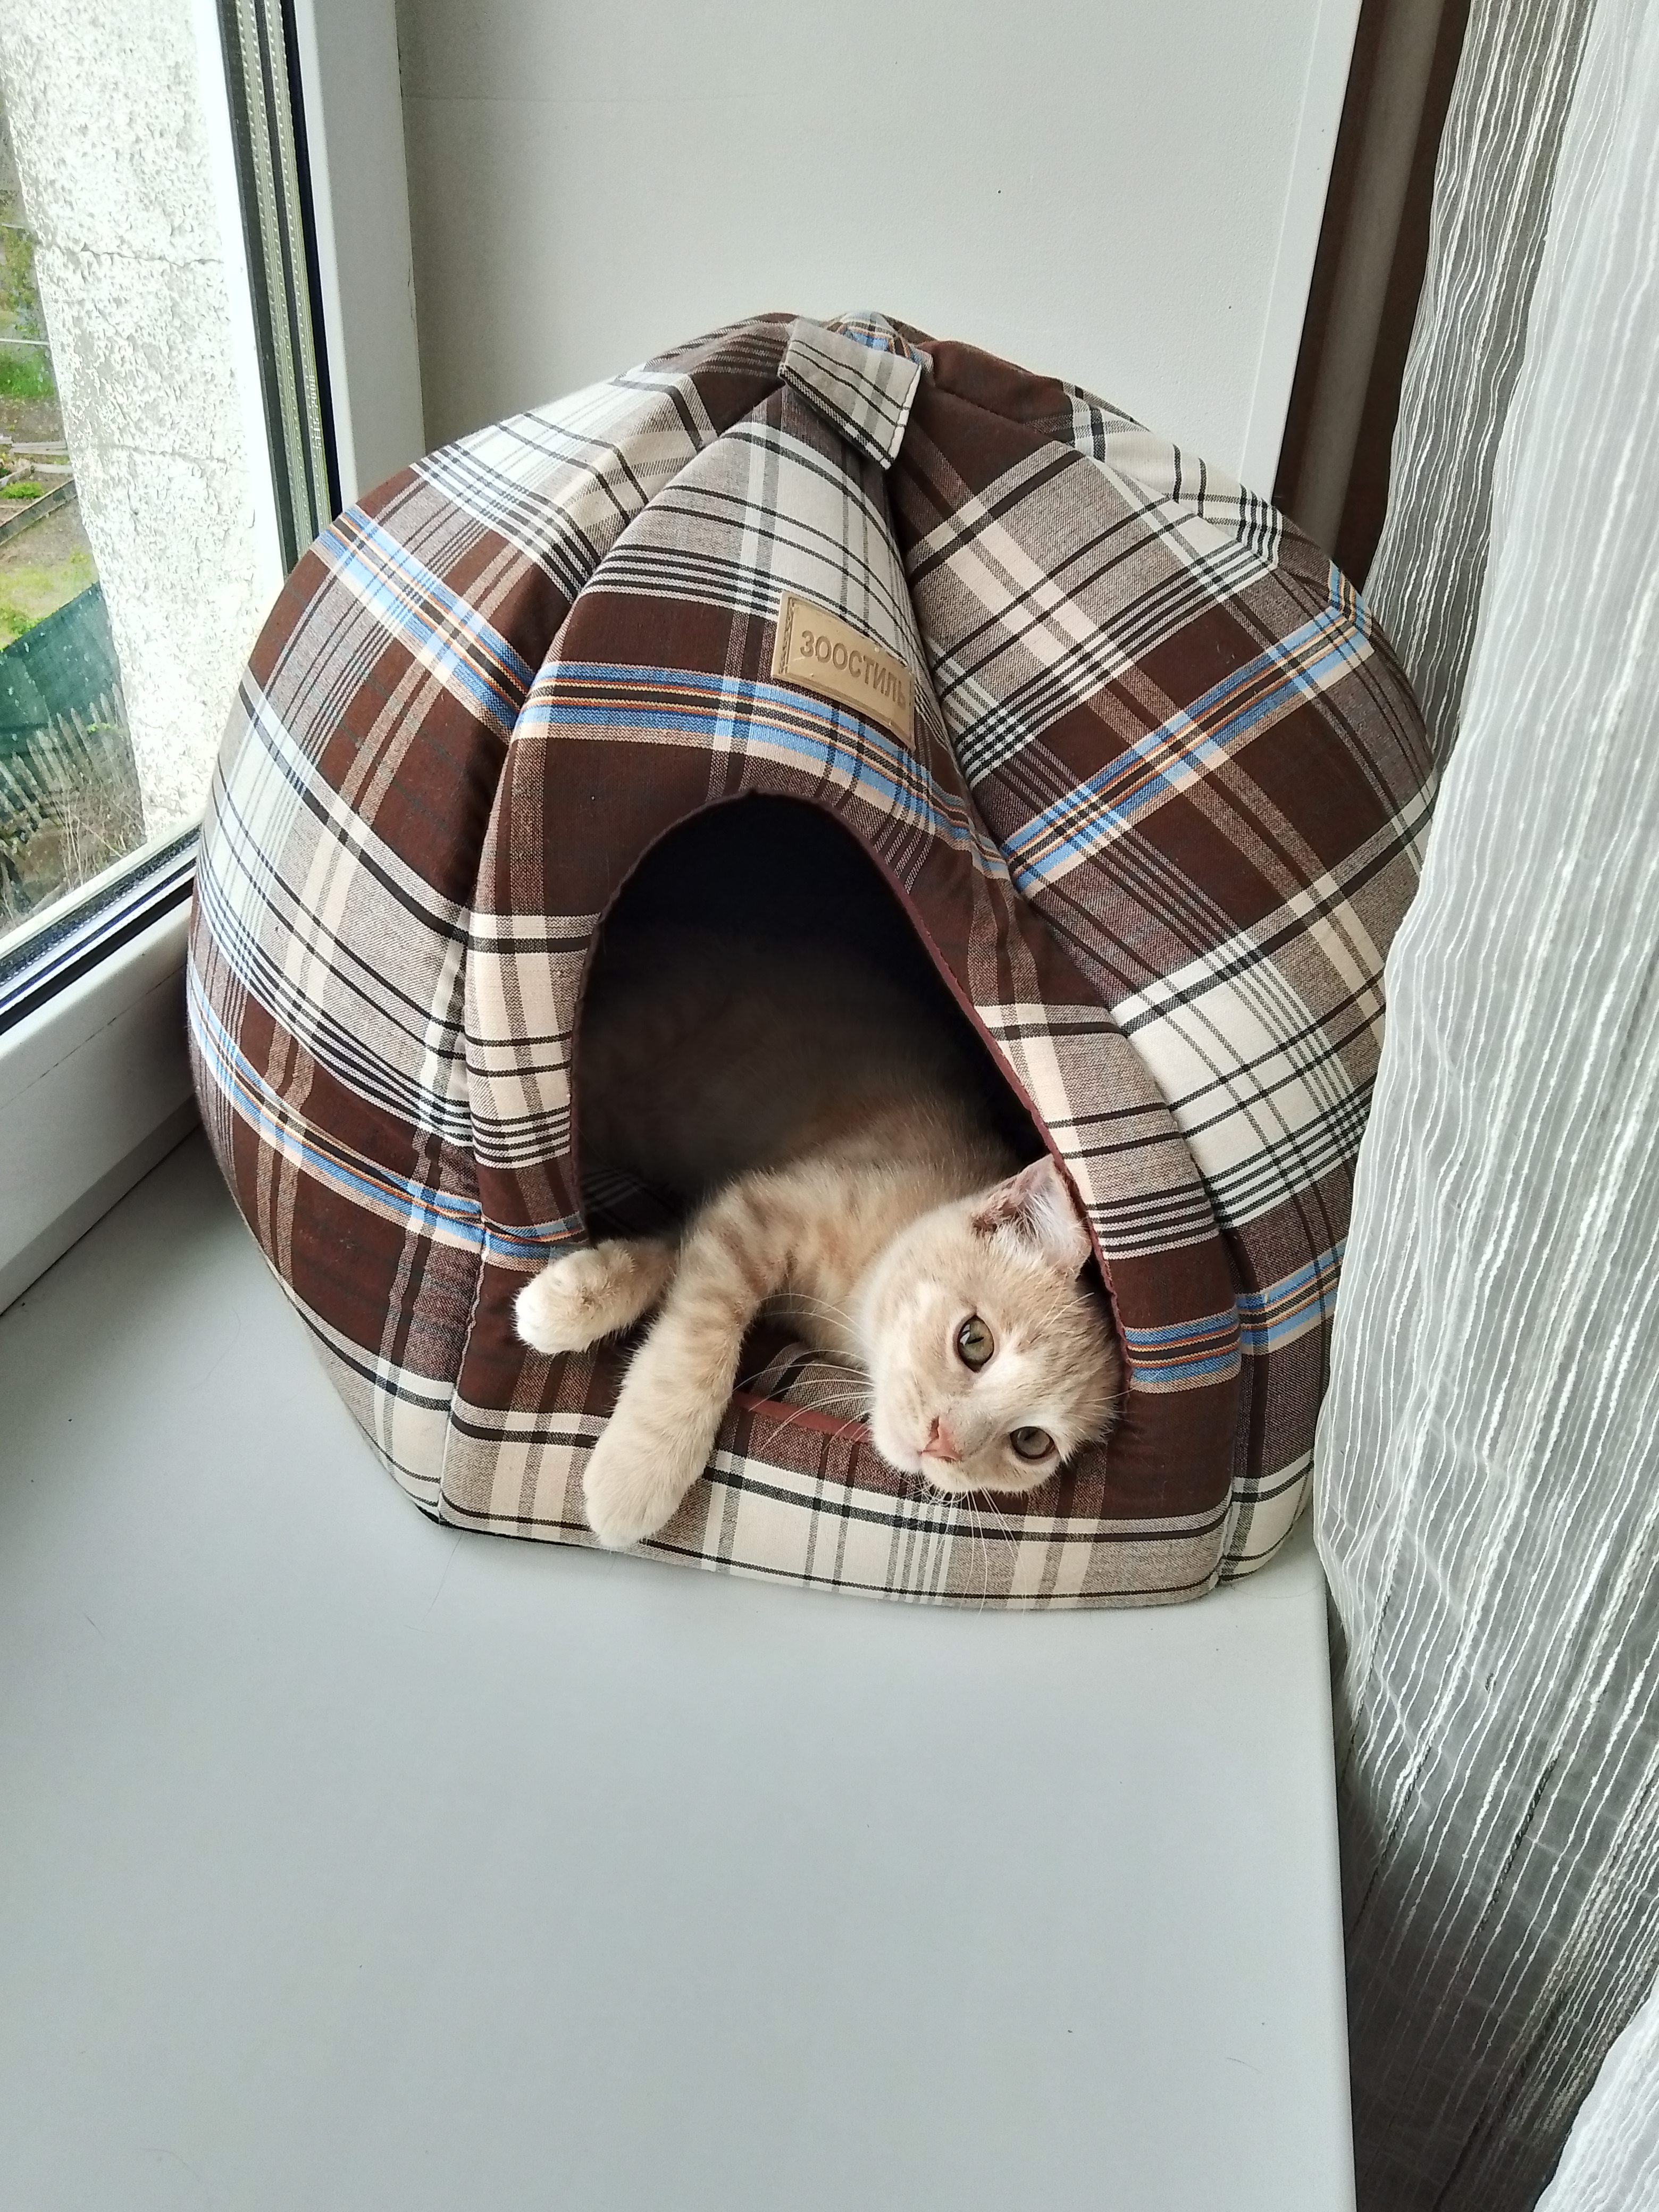 Фото питомца: кот Персик любит прятаться